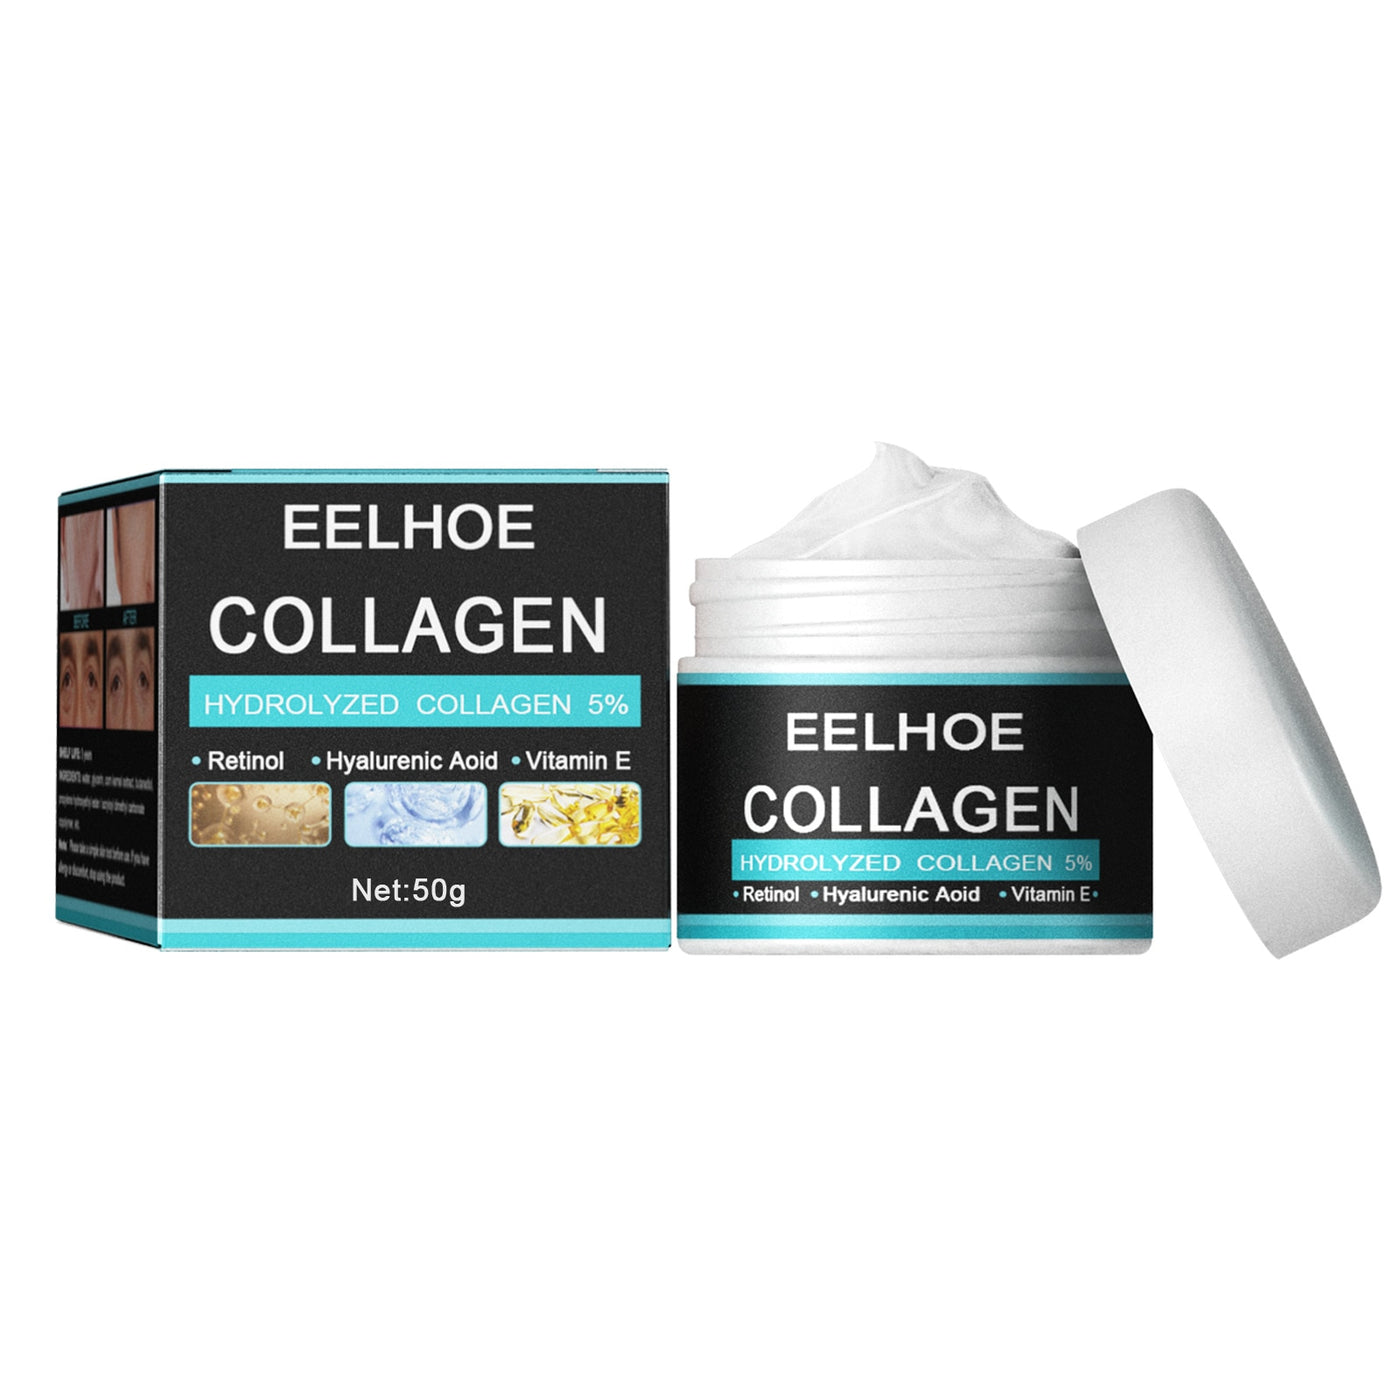 EELHOE Anti Aging Skin Care Collagen Cream For Men